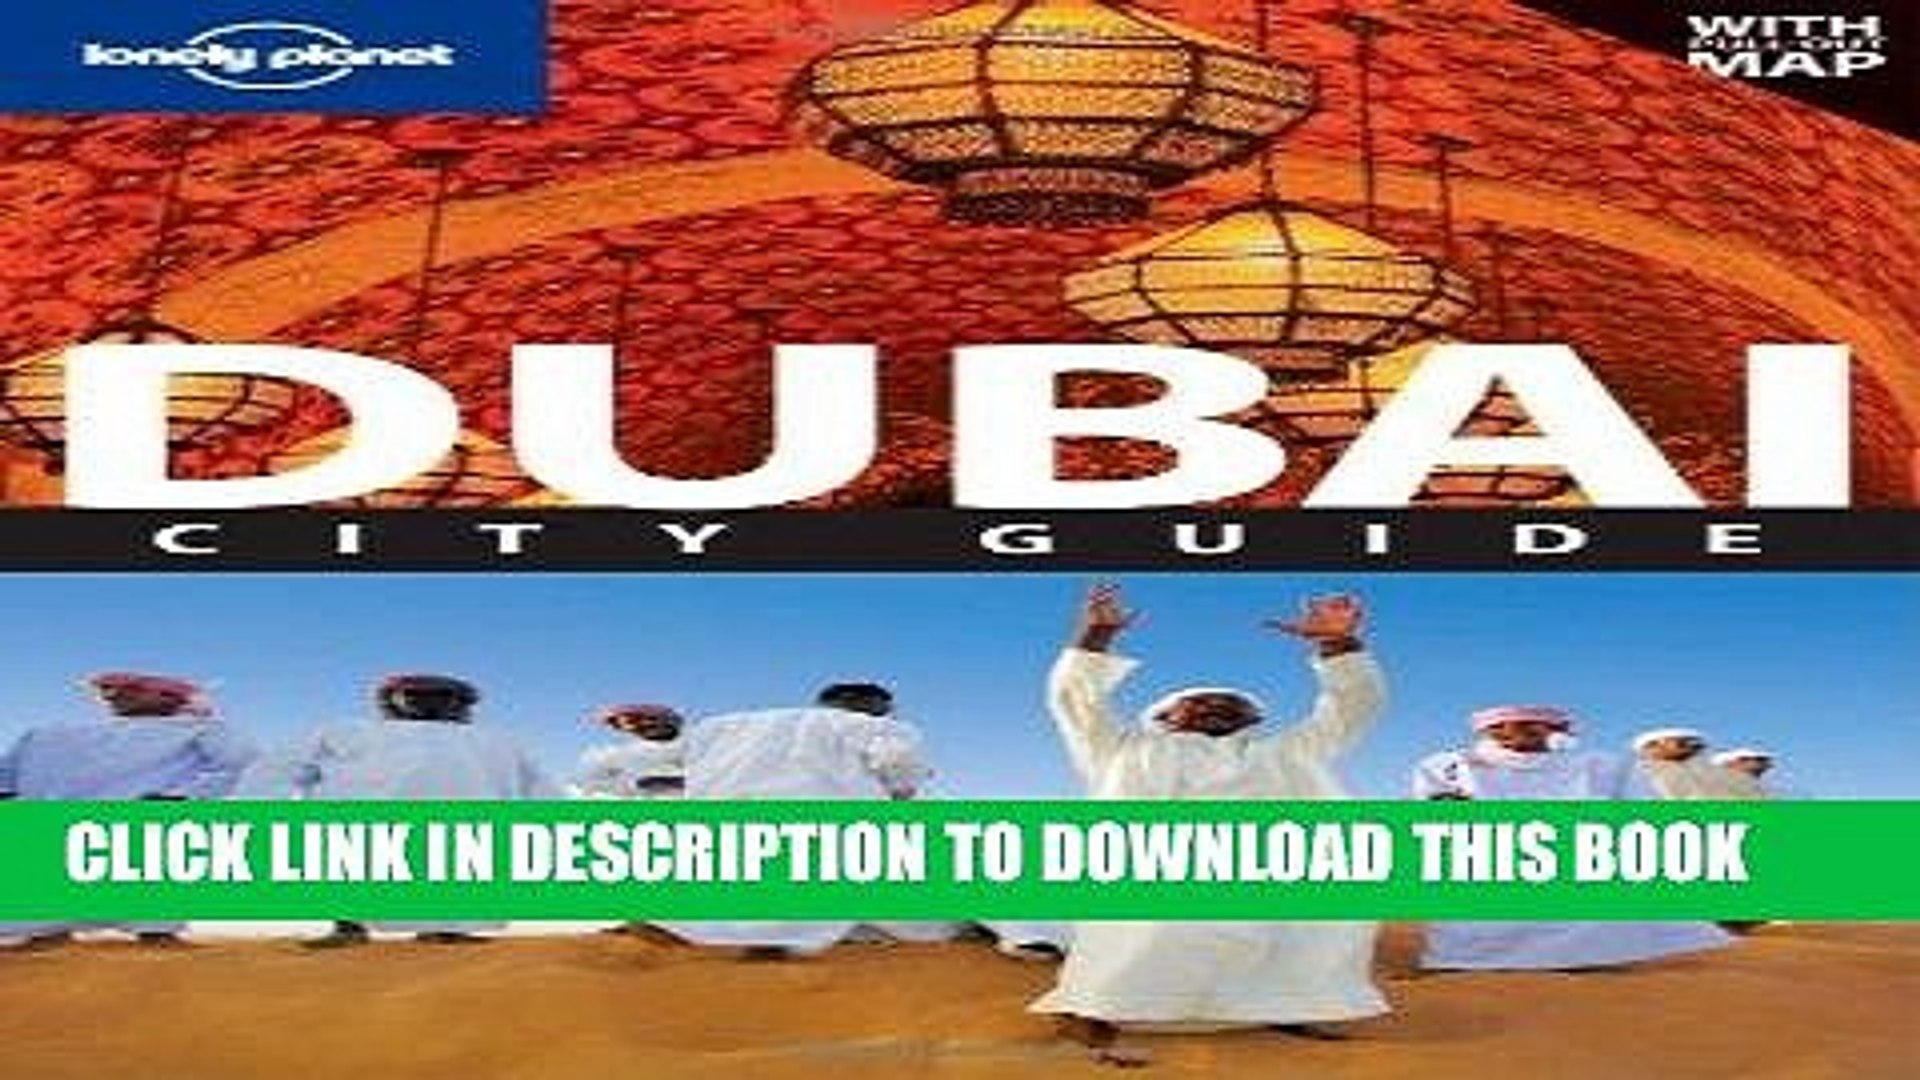 Best Seller Dubai (City Travel Guide) Free Read